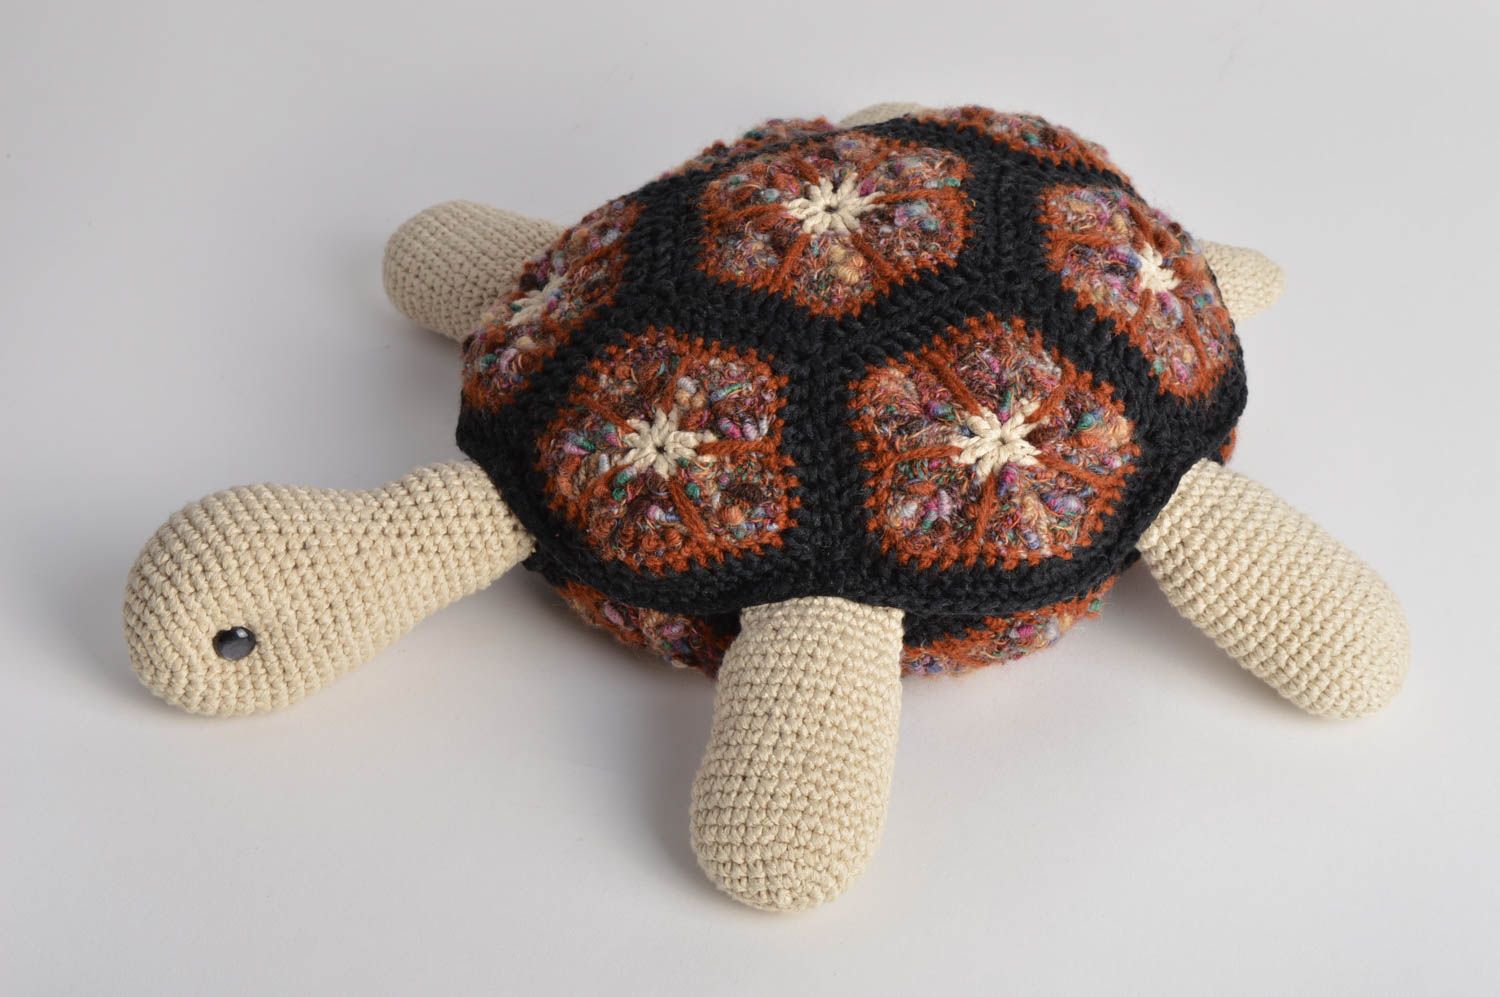 Мягкая оригинальная игрушка подушка для детей в виде черепахи вязаная крючком фото 2